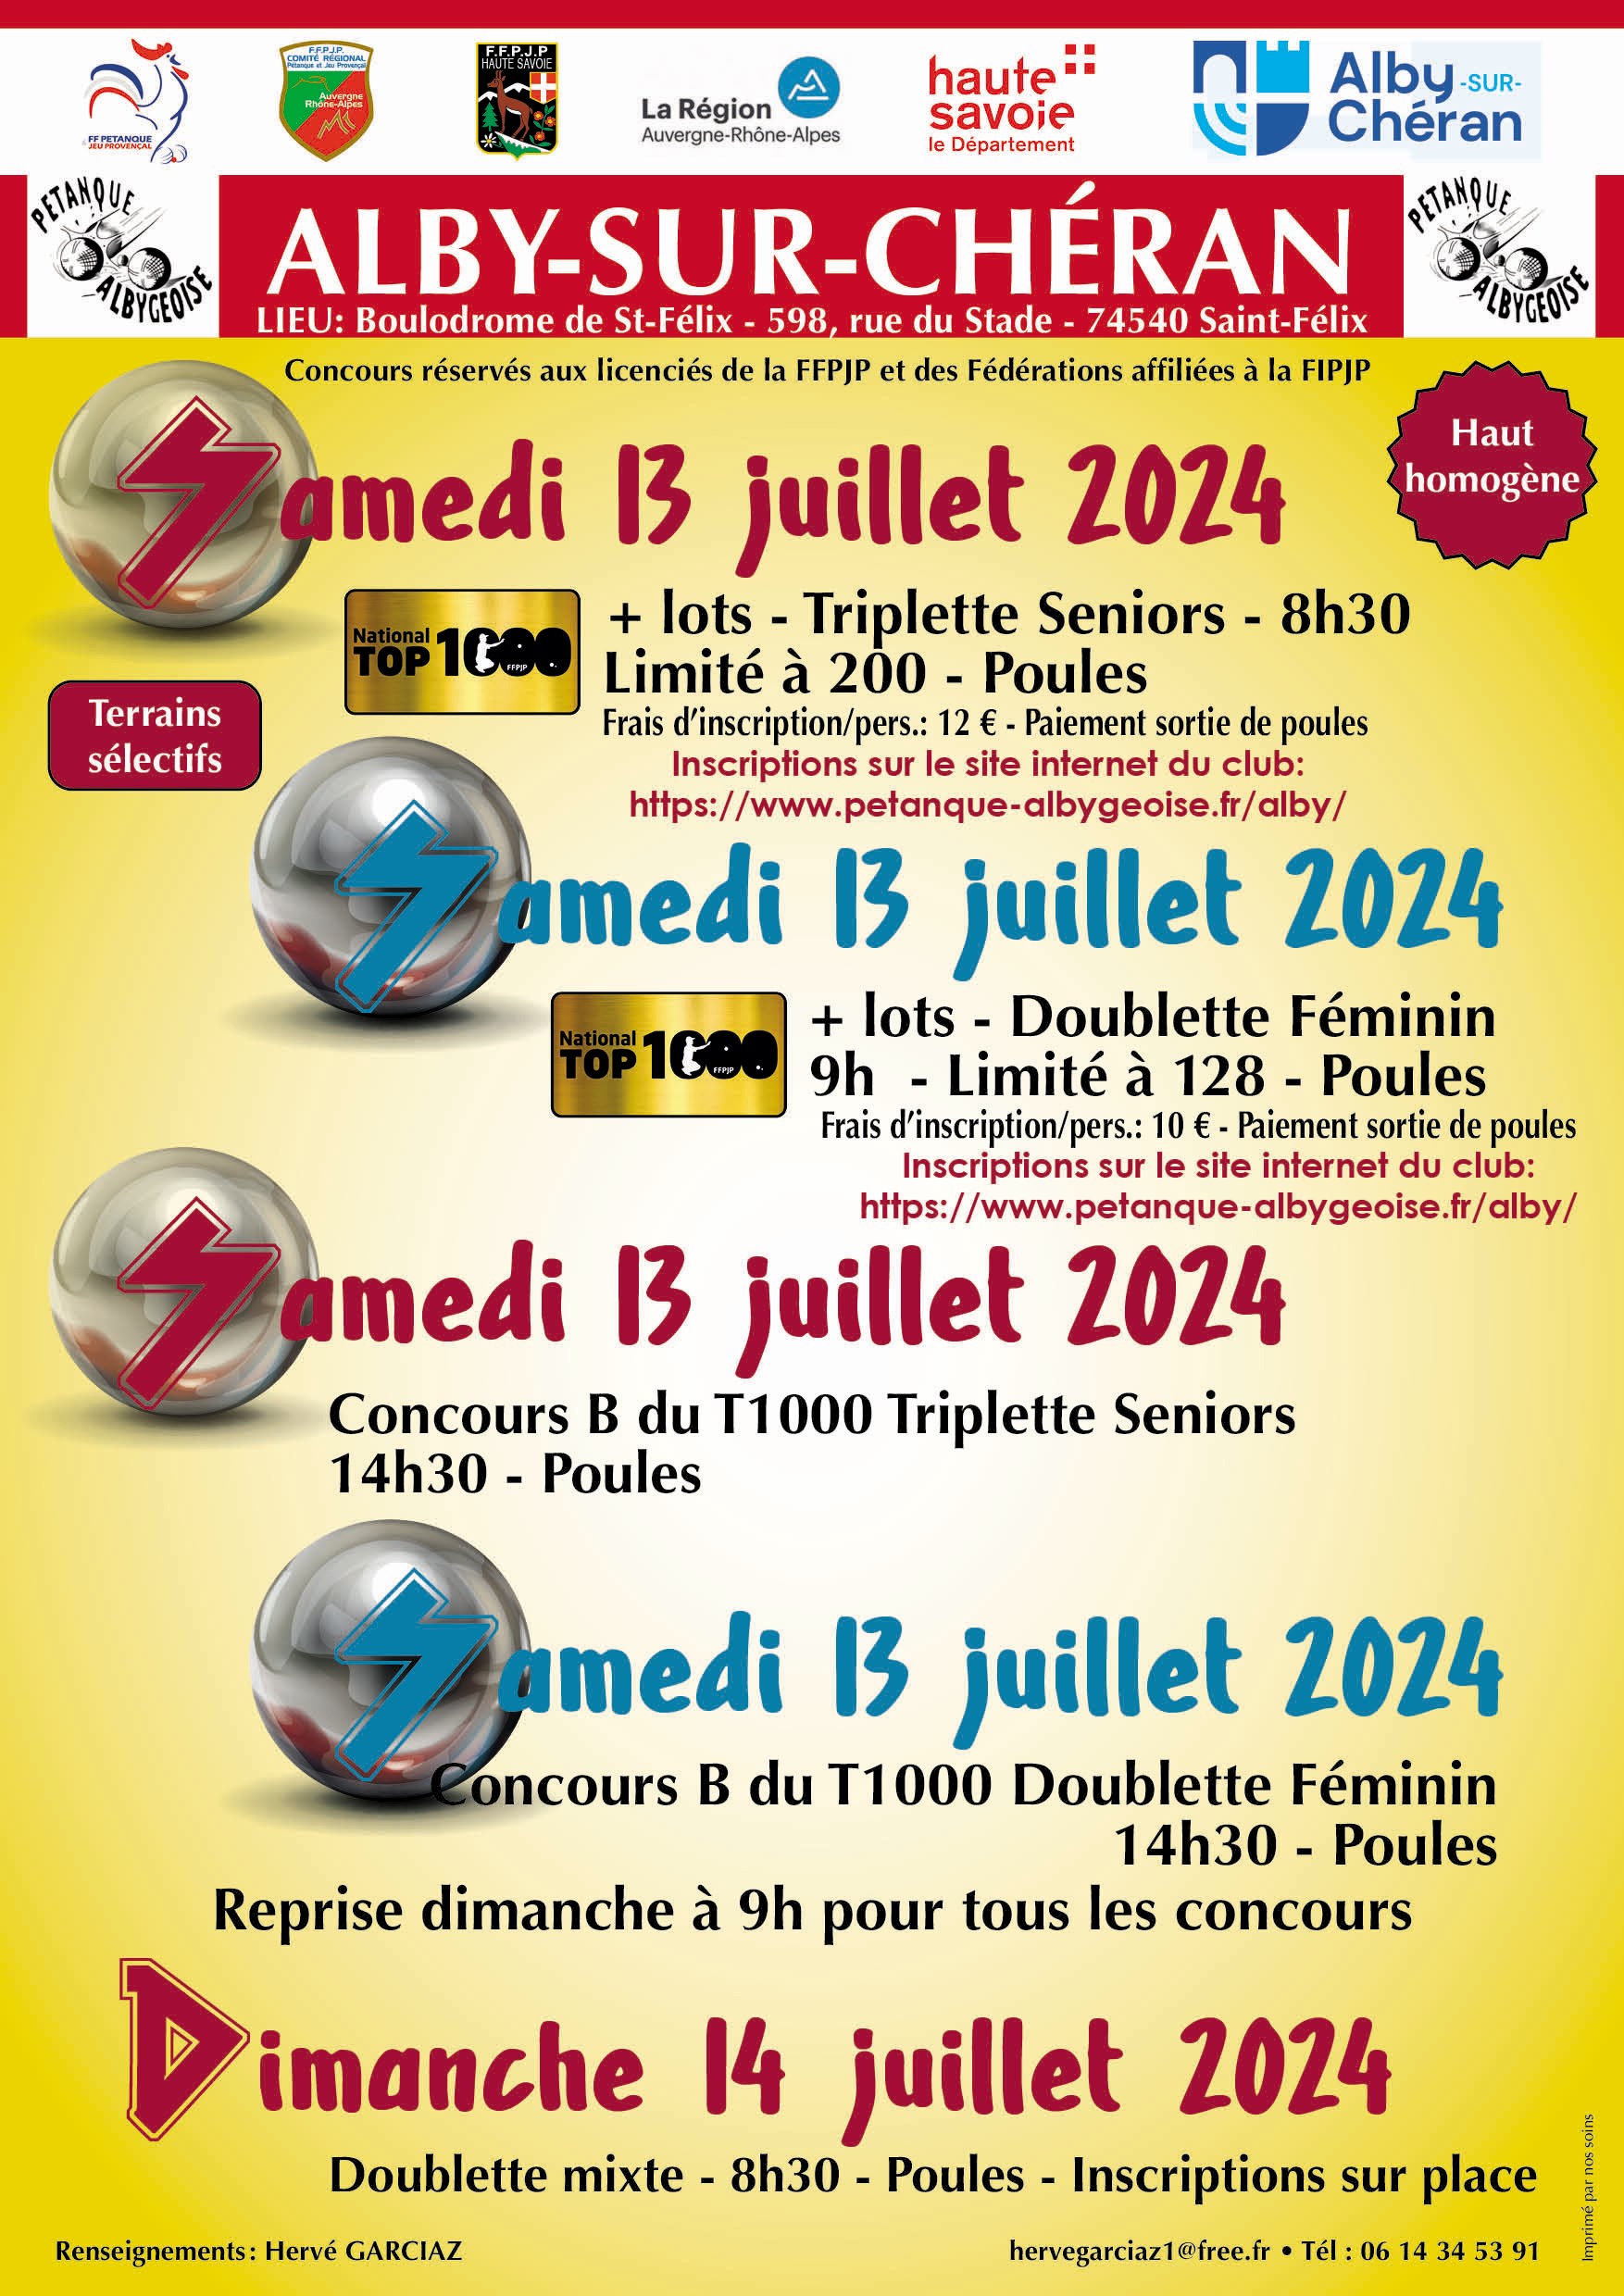 Concours en Doublette le 13 juillet 2024 - Alby-sur-Chéran - 74540